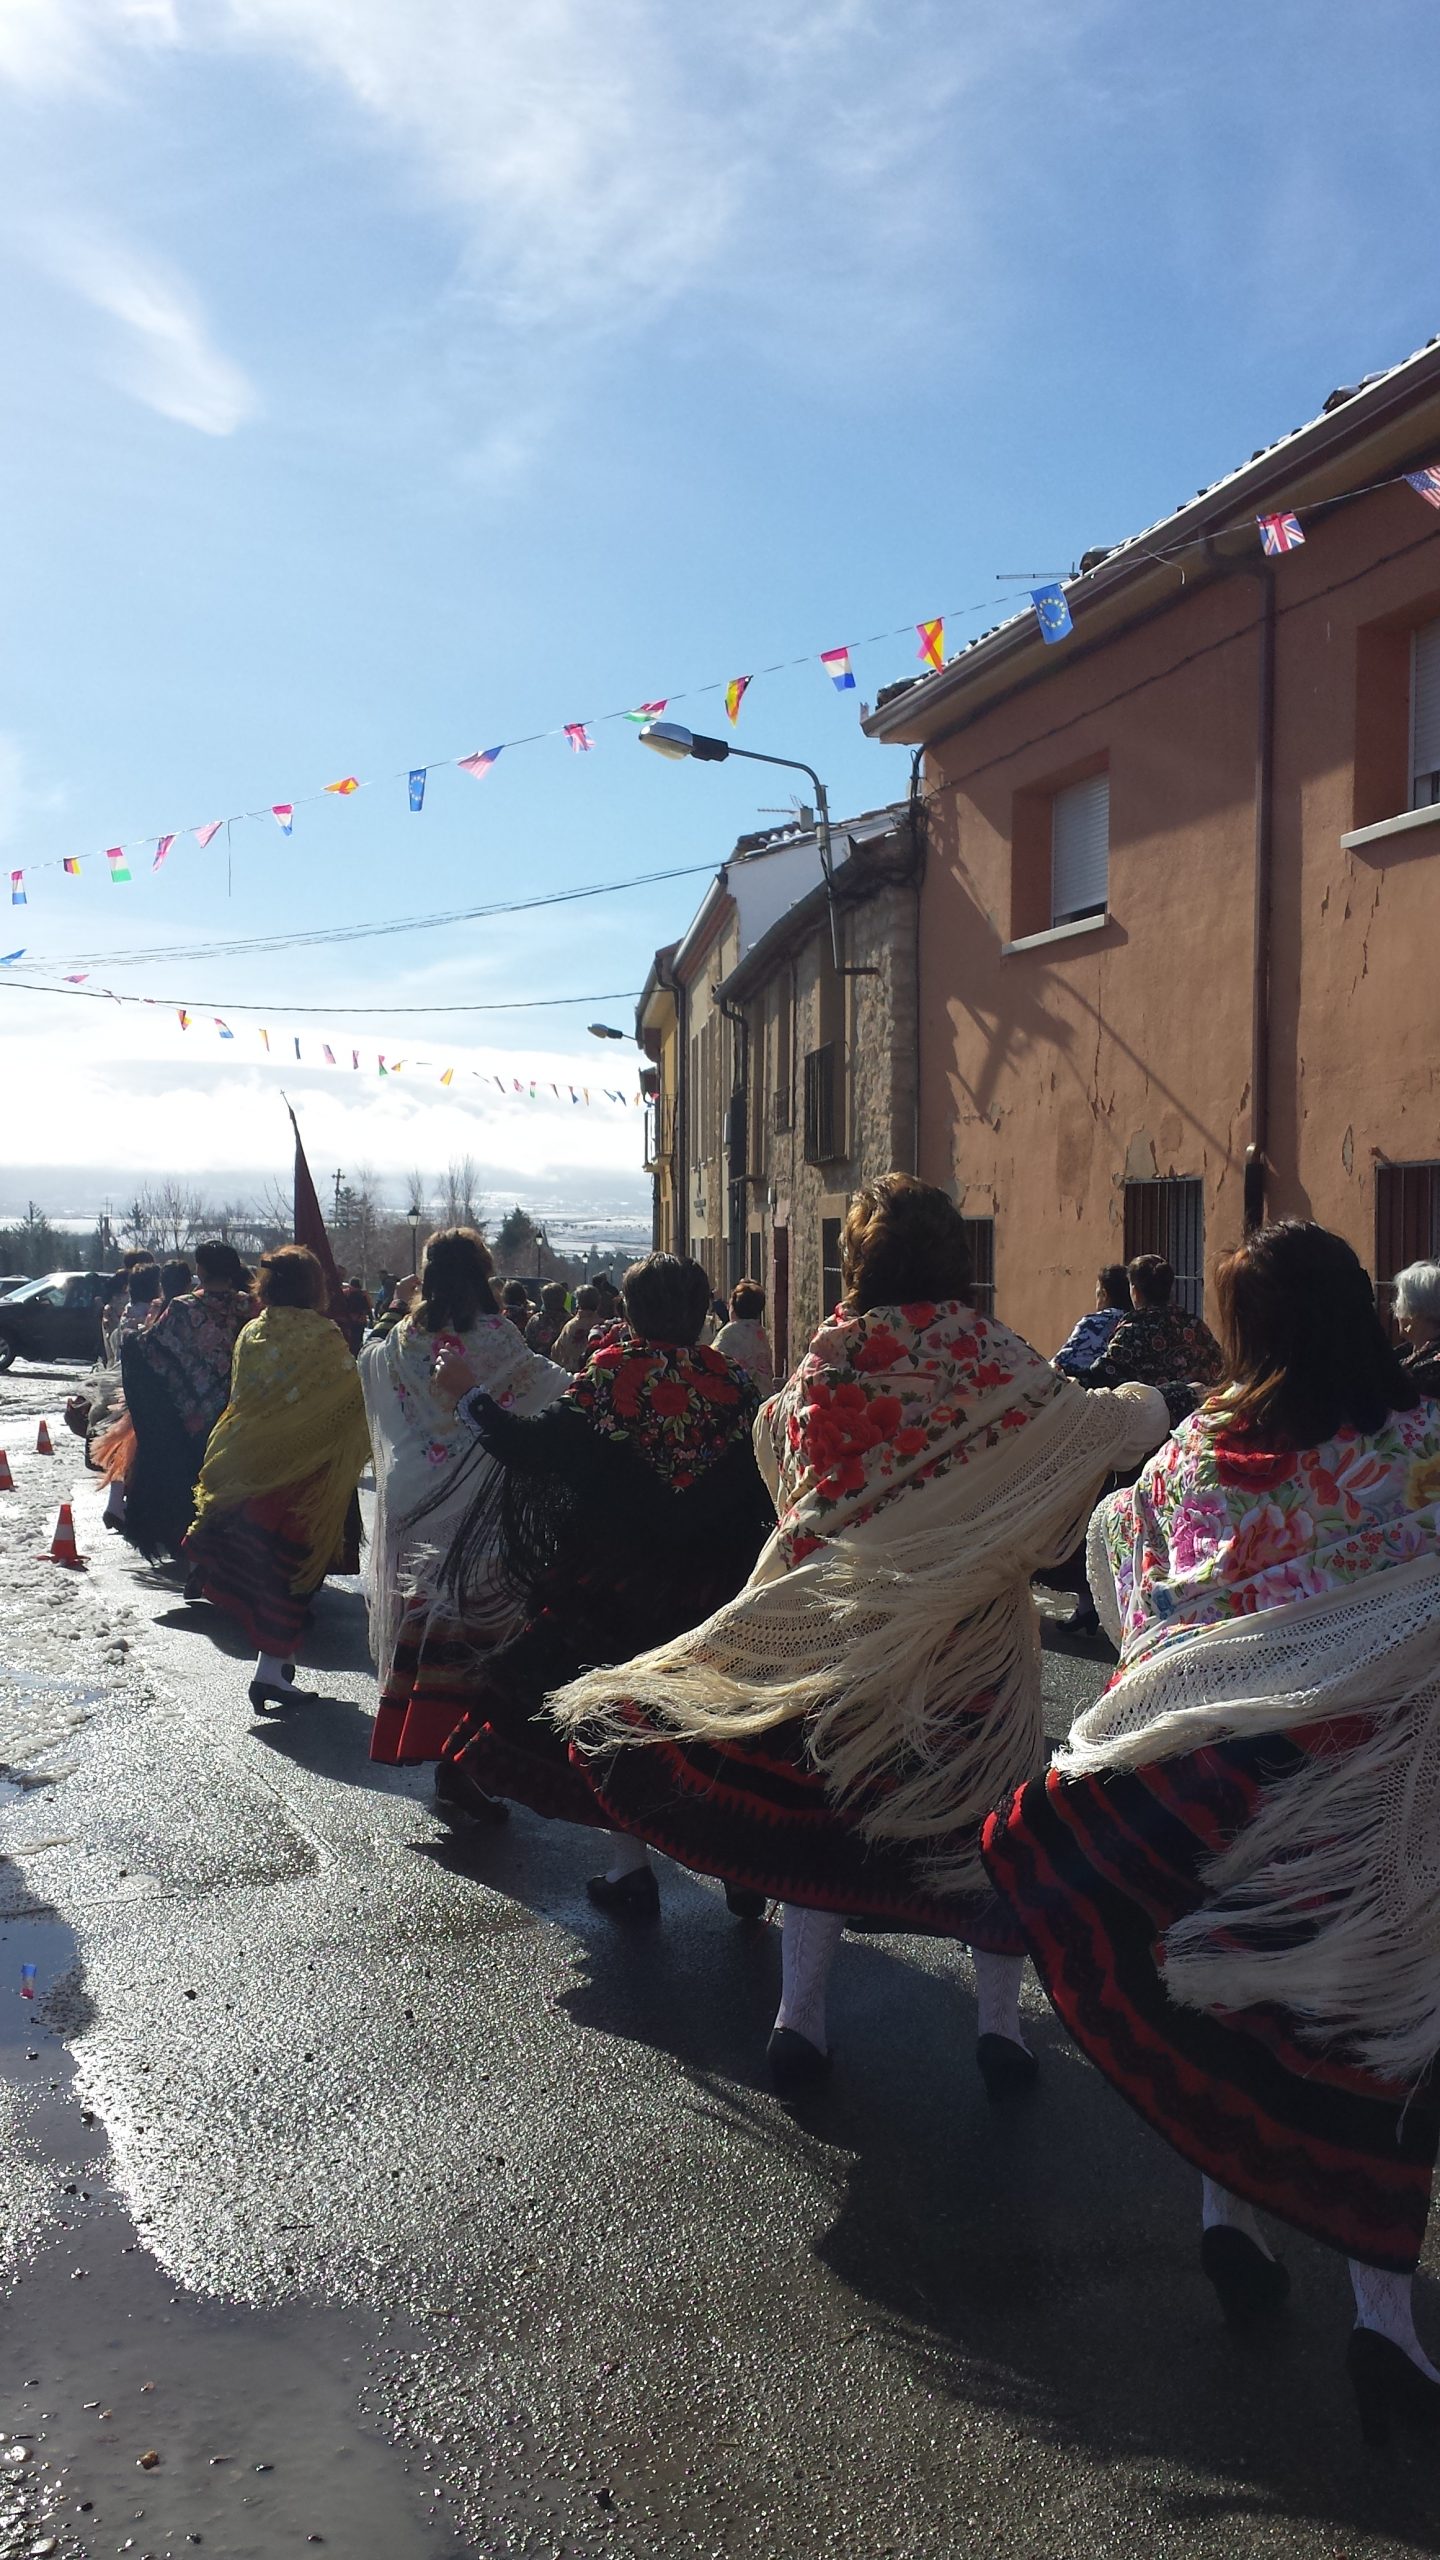 02 Zamarriegas adornando la procesión de Santa Águeda. Fiesta de Las Águedas de Zamarramala, Segovia